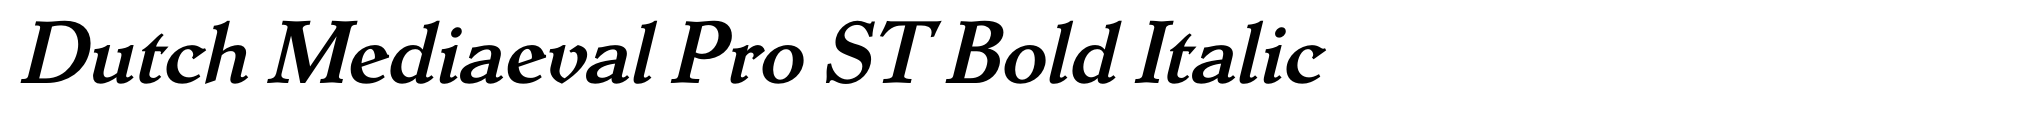 Dutch Mediaeval Pro ST Bold Italic image